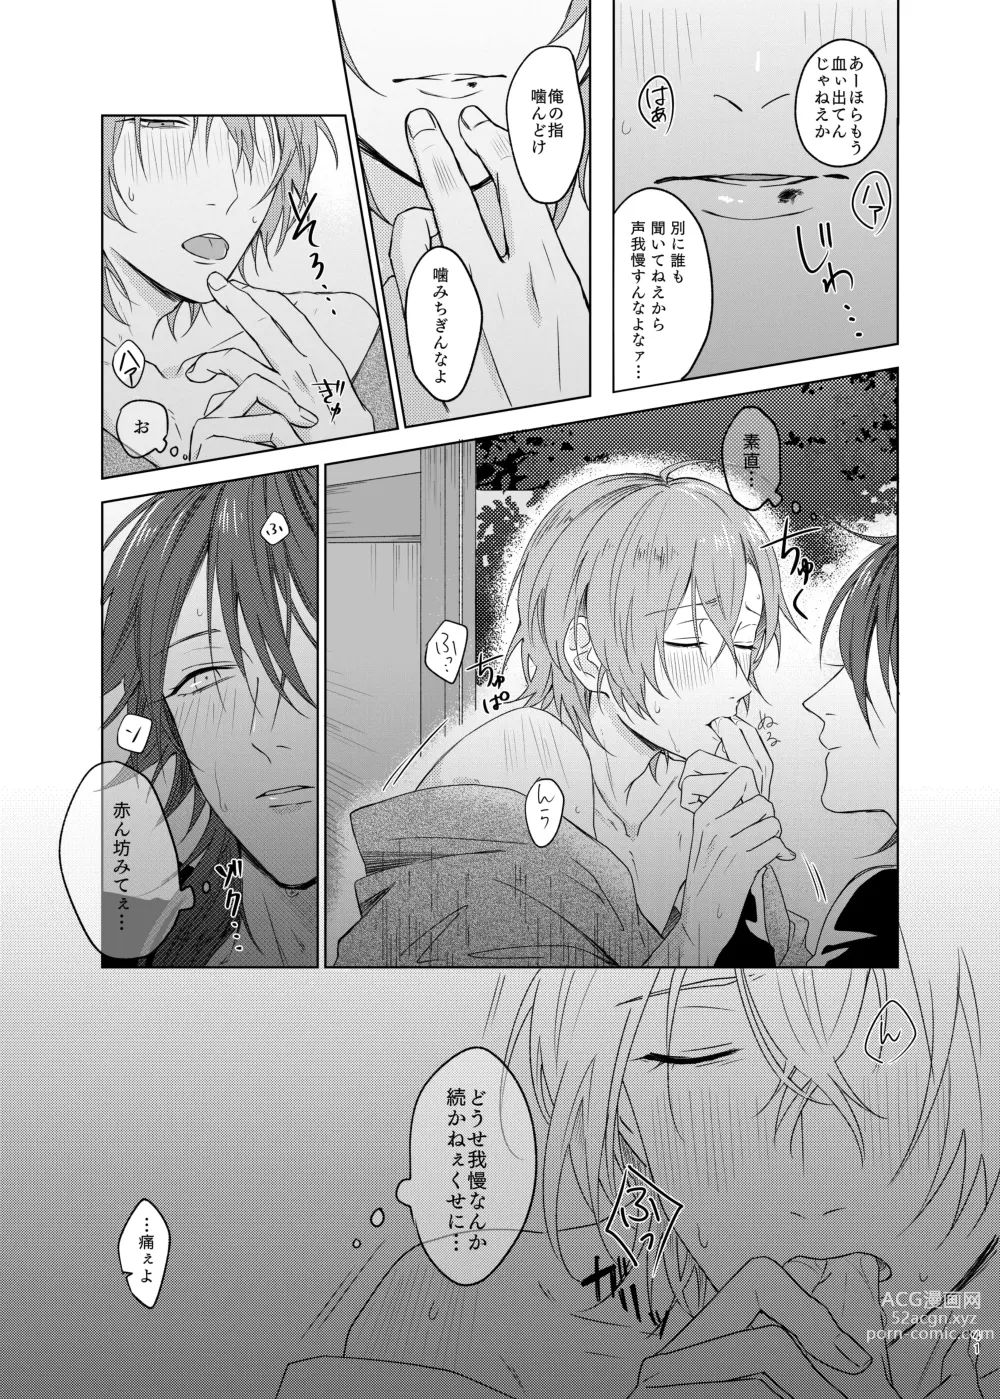 Page 41 of doujinshi Kami sama no ko